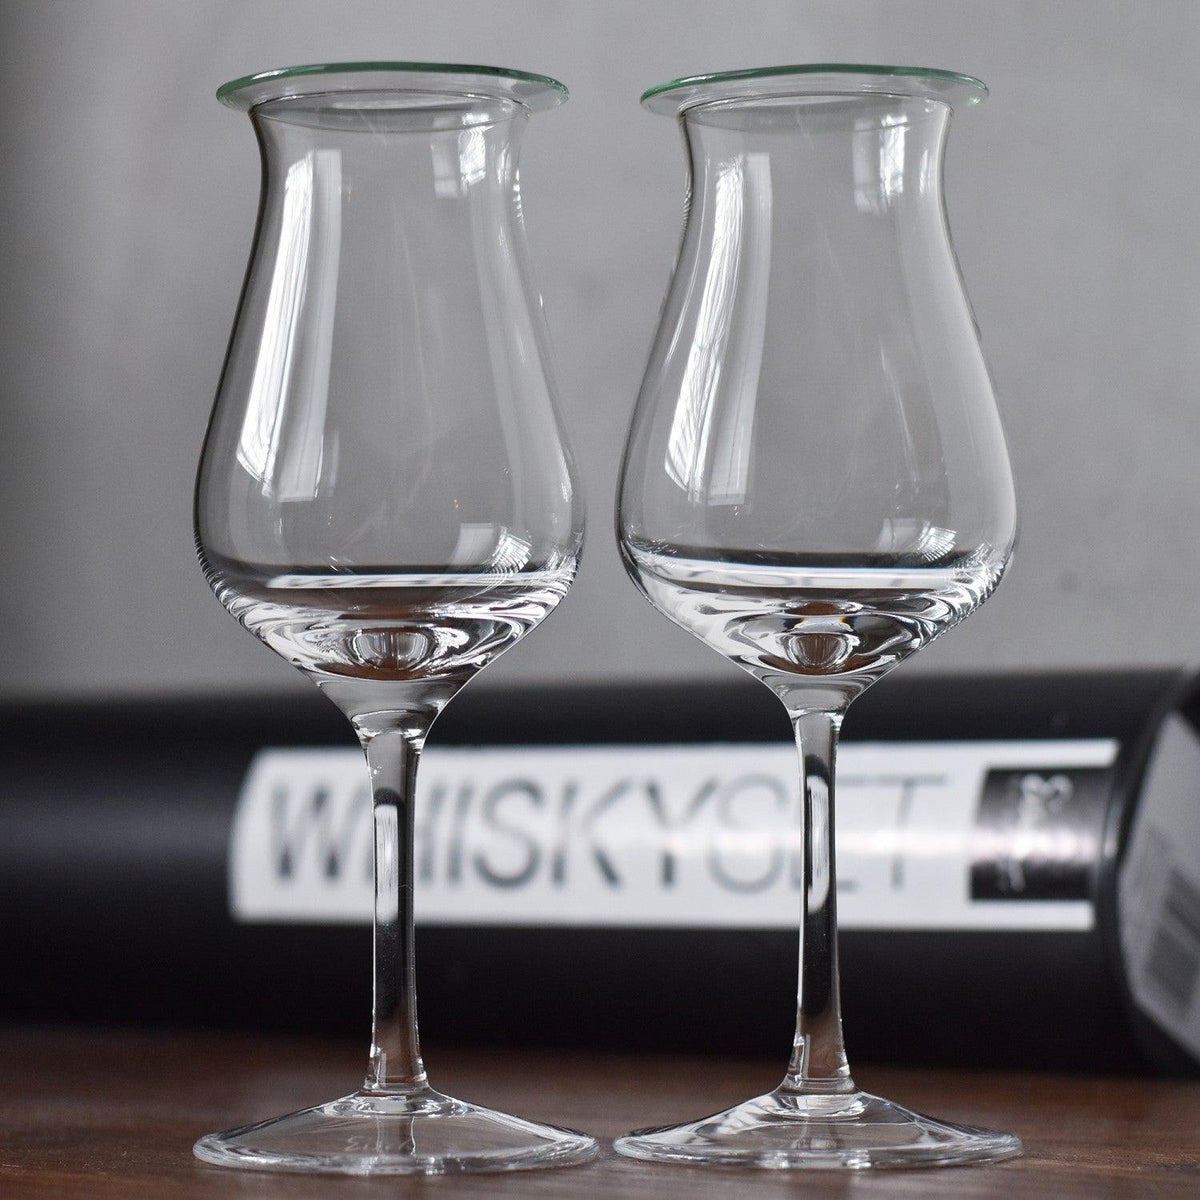 Eisch Handmade Malt Whisky Glass Gift Set - The Rare Malt